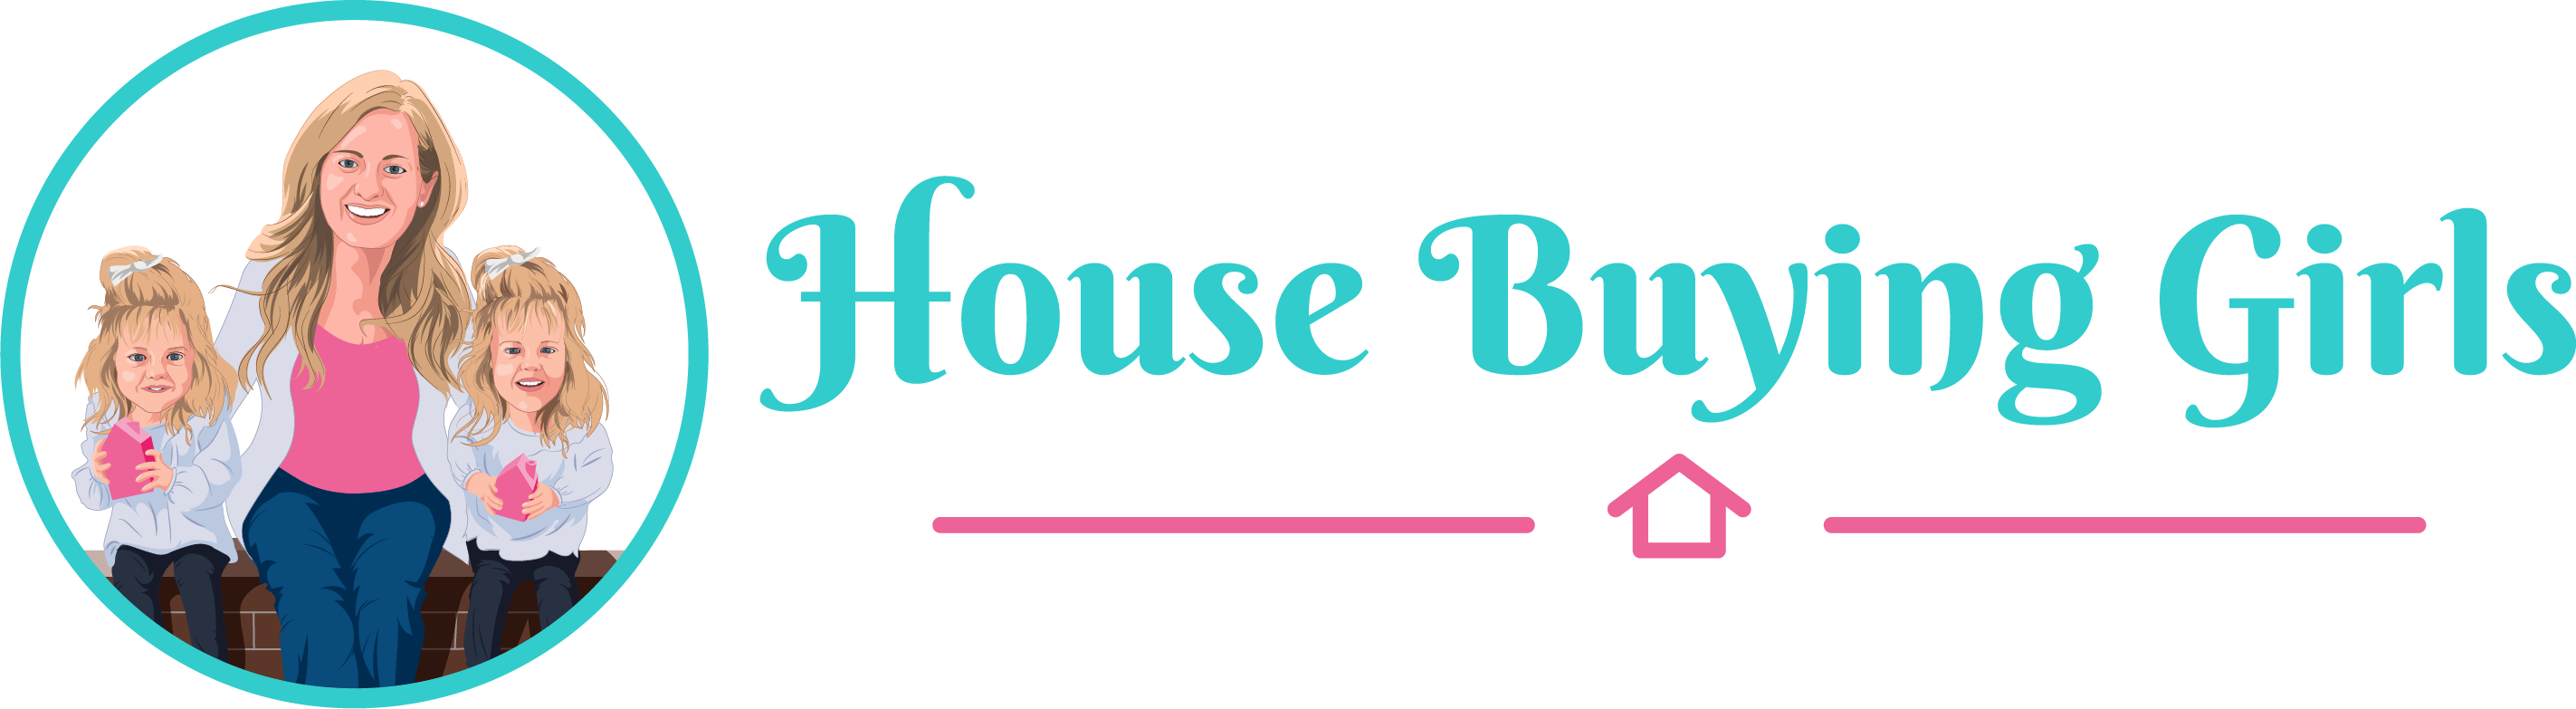 House Buying Girls logo